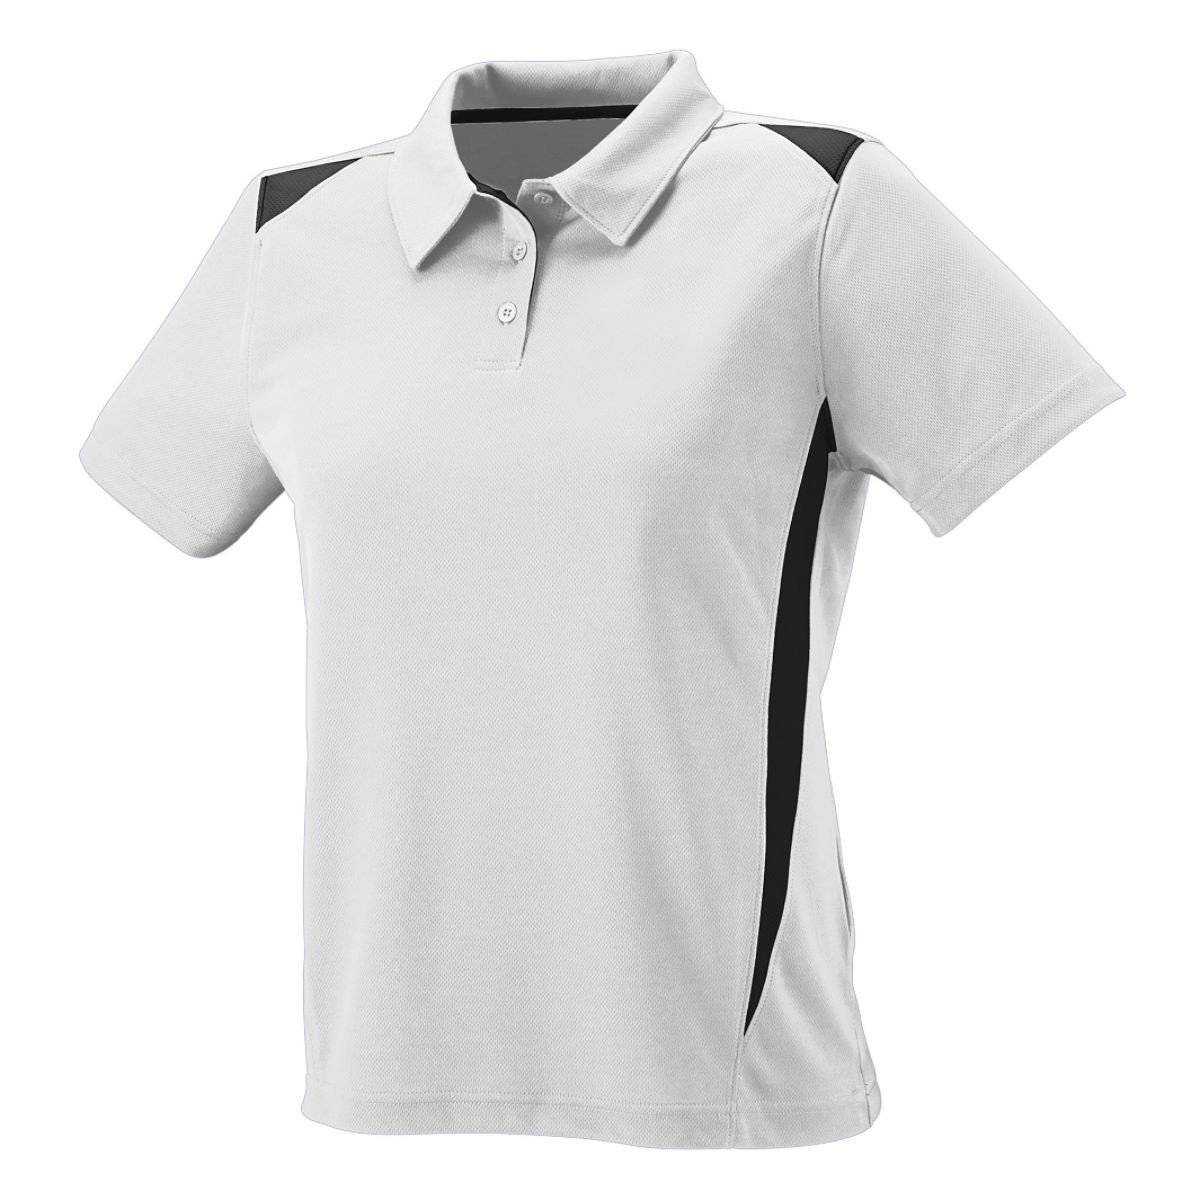 Augusta 5013 Ladies Premier Sport Shirt - White Black - HIT a Double